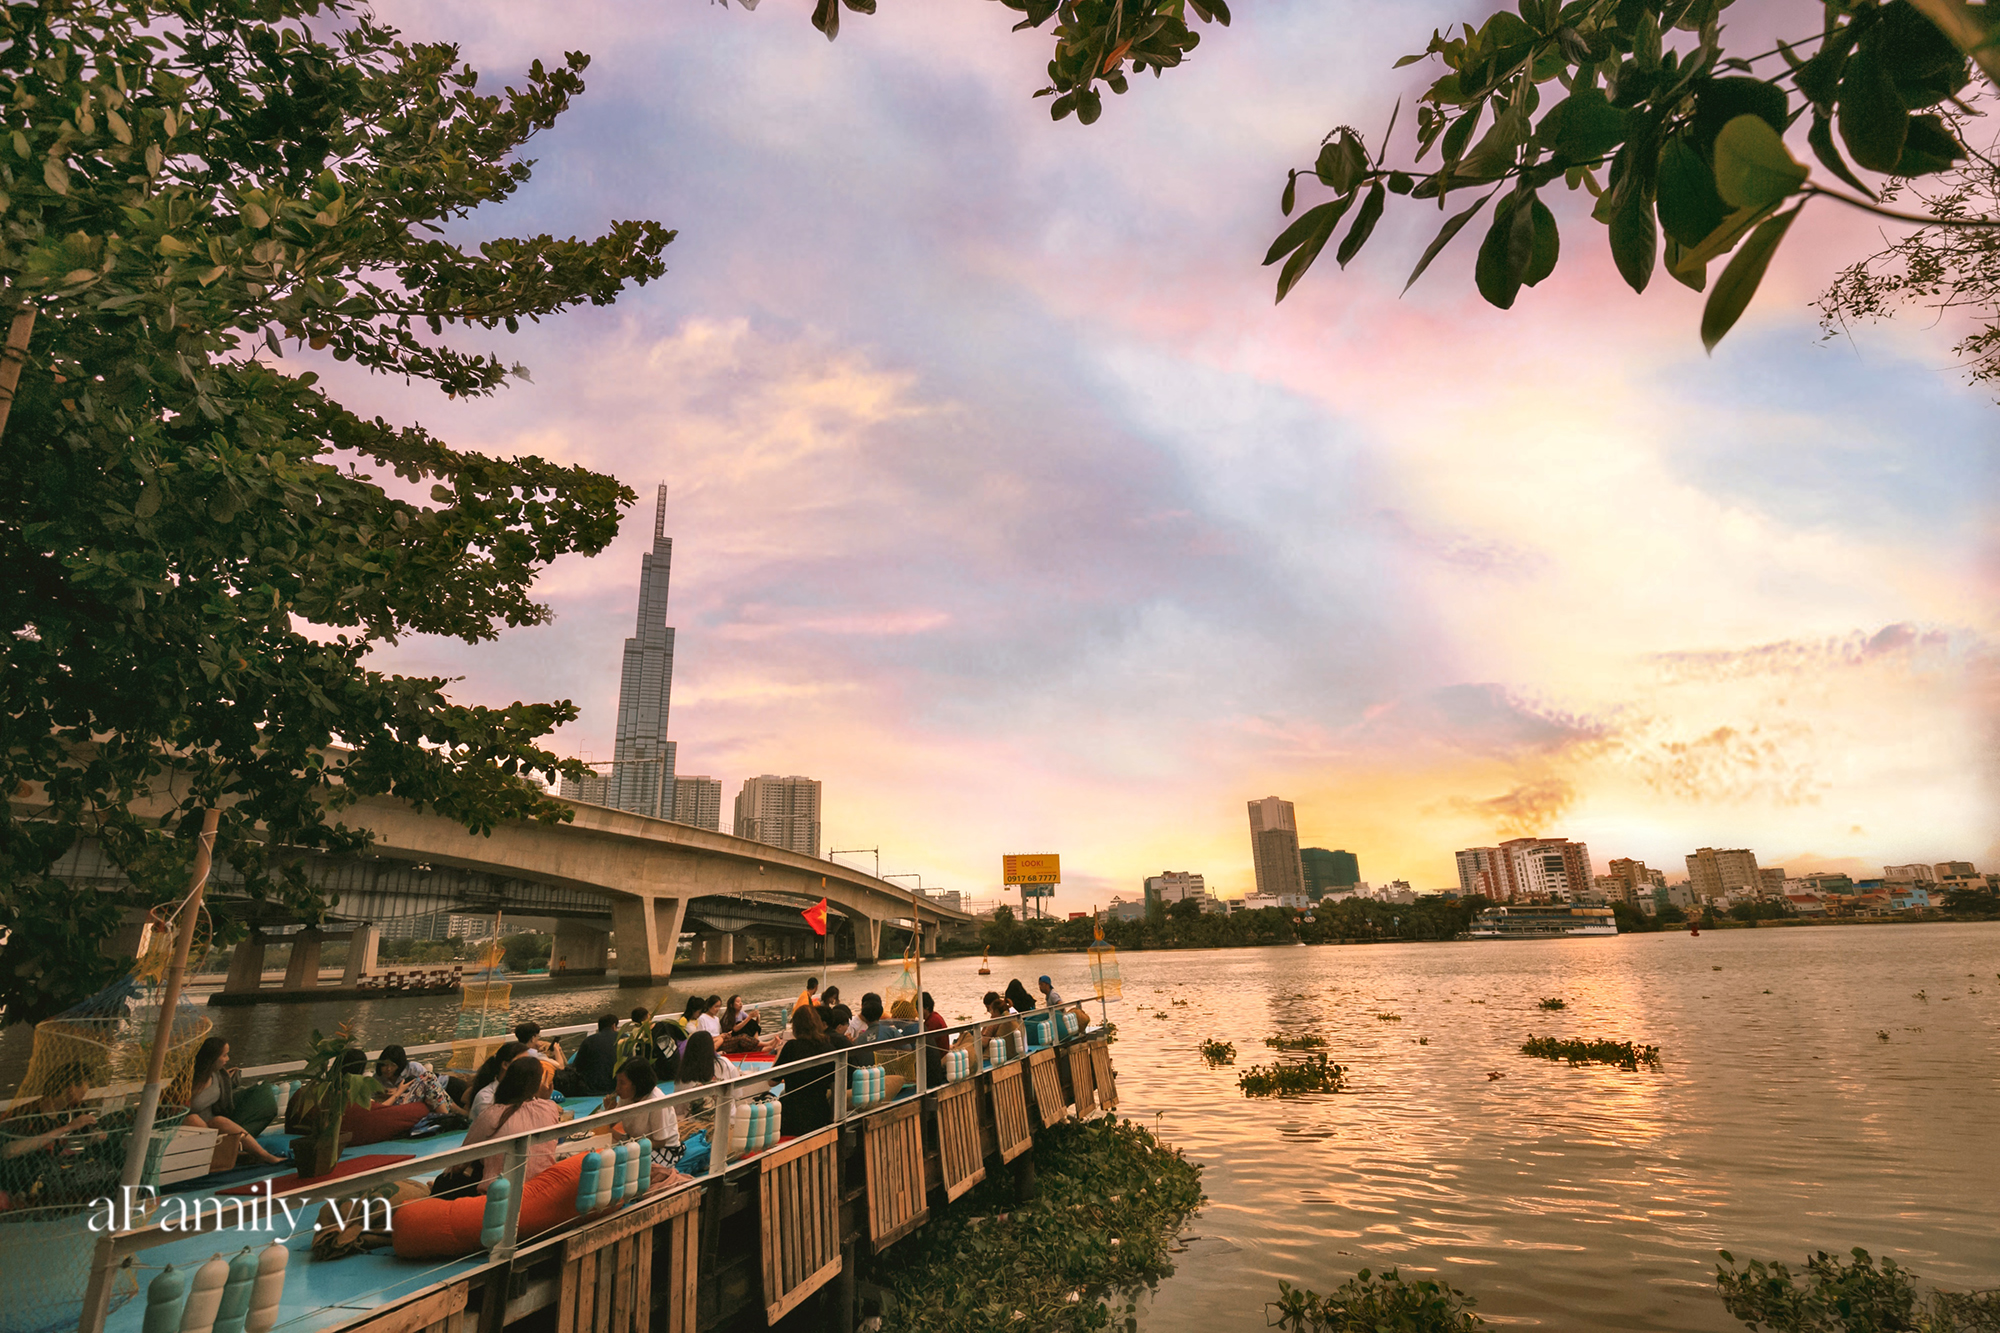 Quán cà phê Sài Gòn trên sông về đêm là nơi lý tưởng cho những tâm hồn yêu thích sự lãng mạn và đầy cảm xúc. Ngắm nhìn bầu trời đêm tuyệt đẹp cùng với ánh đèn trên sông sẽ khiến bạn cảm thấy thật sự tuyệt vời. Hãy xem hình ảnh để tham quan quán cafe Sài Gòn trên sông.